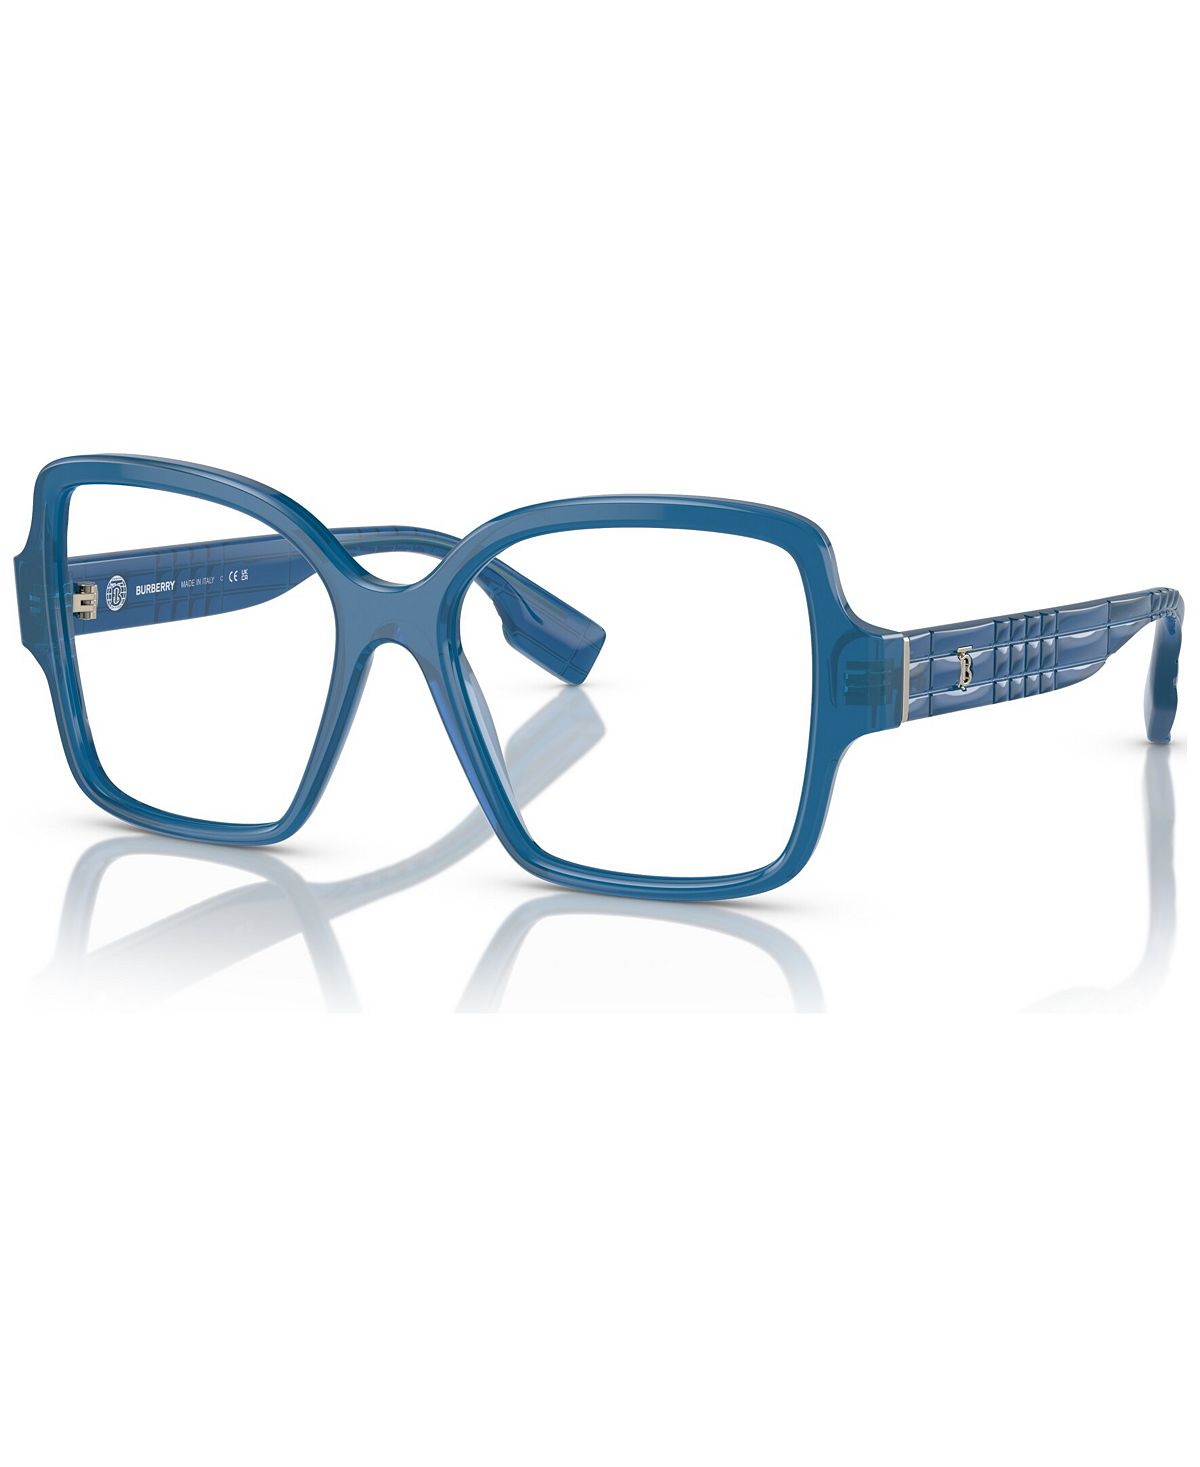 Женские квадратные очки, BE2374 52 Burberry, синий женские квадратные очки be2376 52 burberry черный